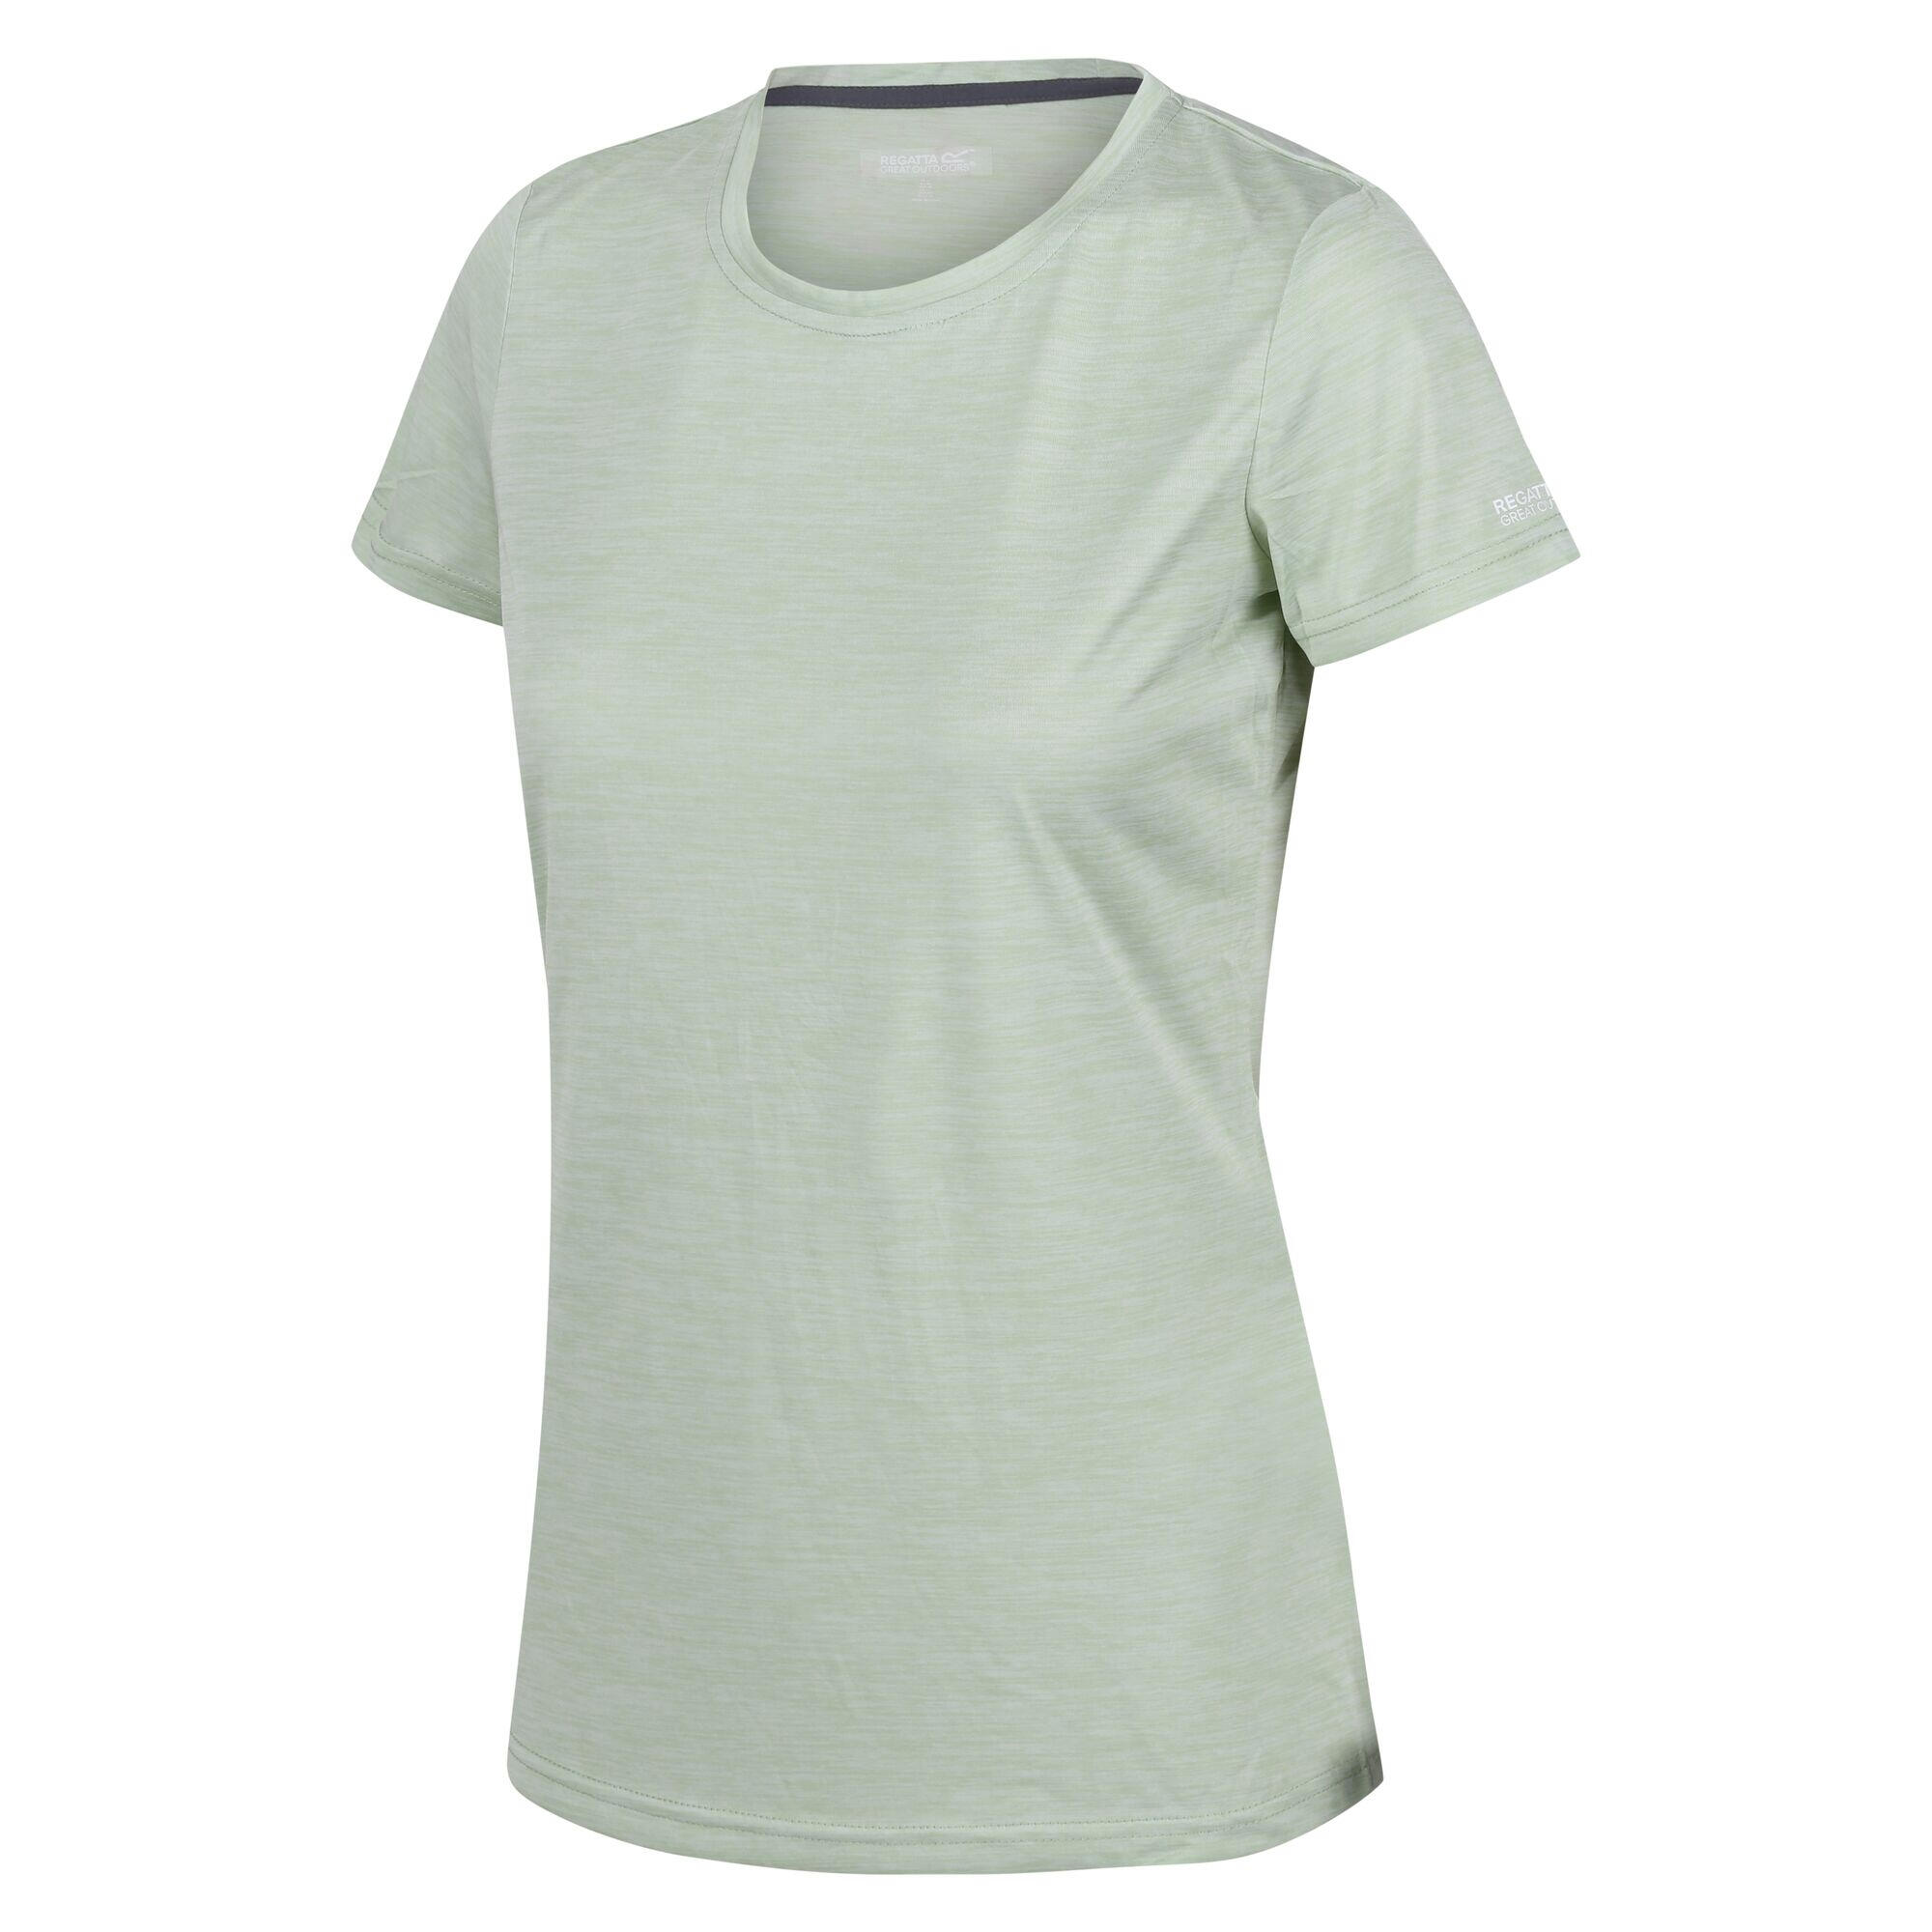 Womens/Ladies Josie Gibson Fingal Edition TShirt (Quiet Green) 3/4